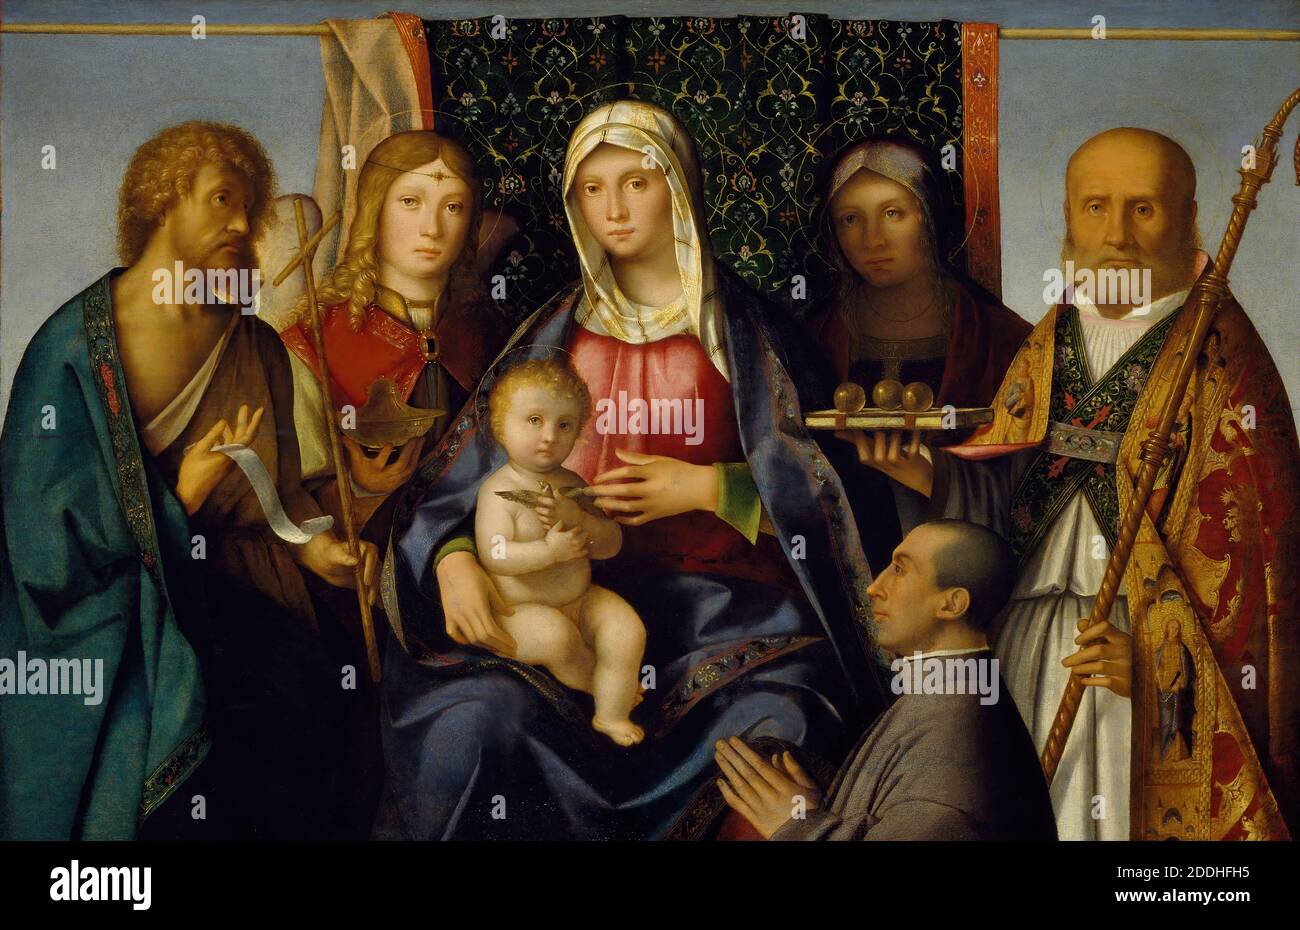 Vierge et enfant avec saints et donneur, 1505-1515 Boccaccio Boccacino, peinture à l'huile, religion, Christian, ancien Maître, religion, Vierge Marie, religion, Jésus Christ, oiseau, Goldfinch Banque D'Images